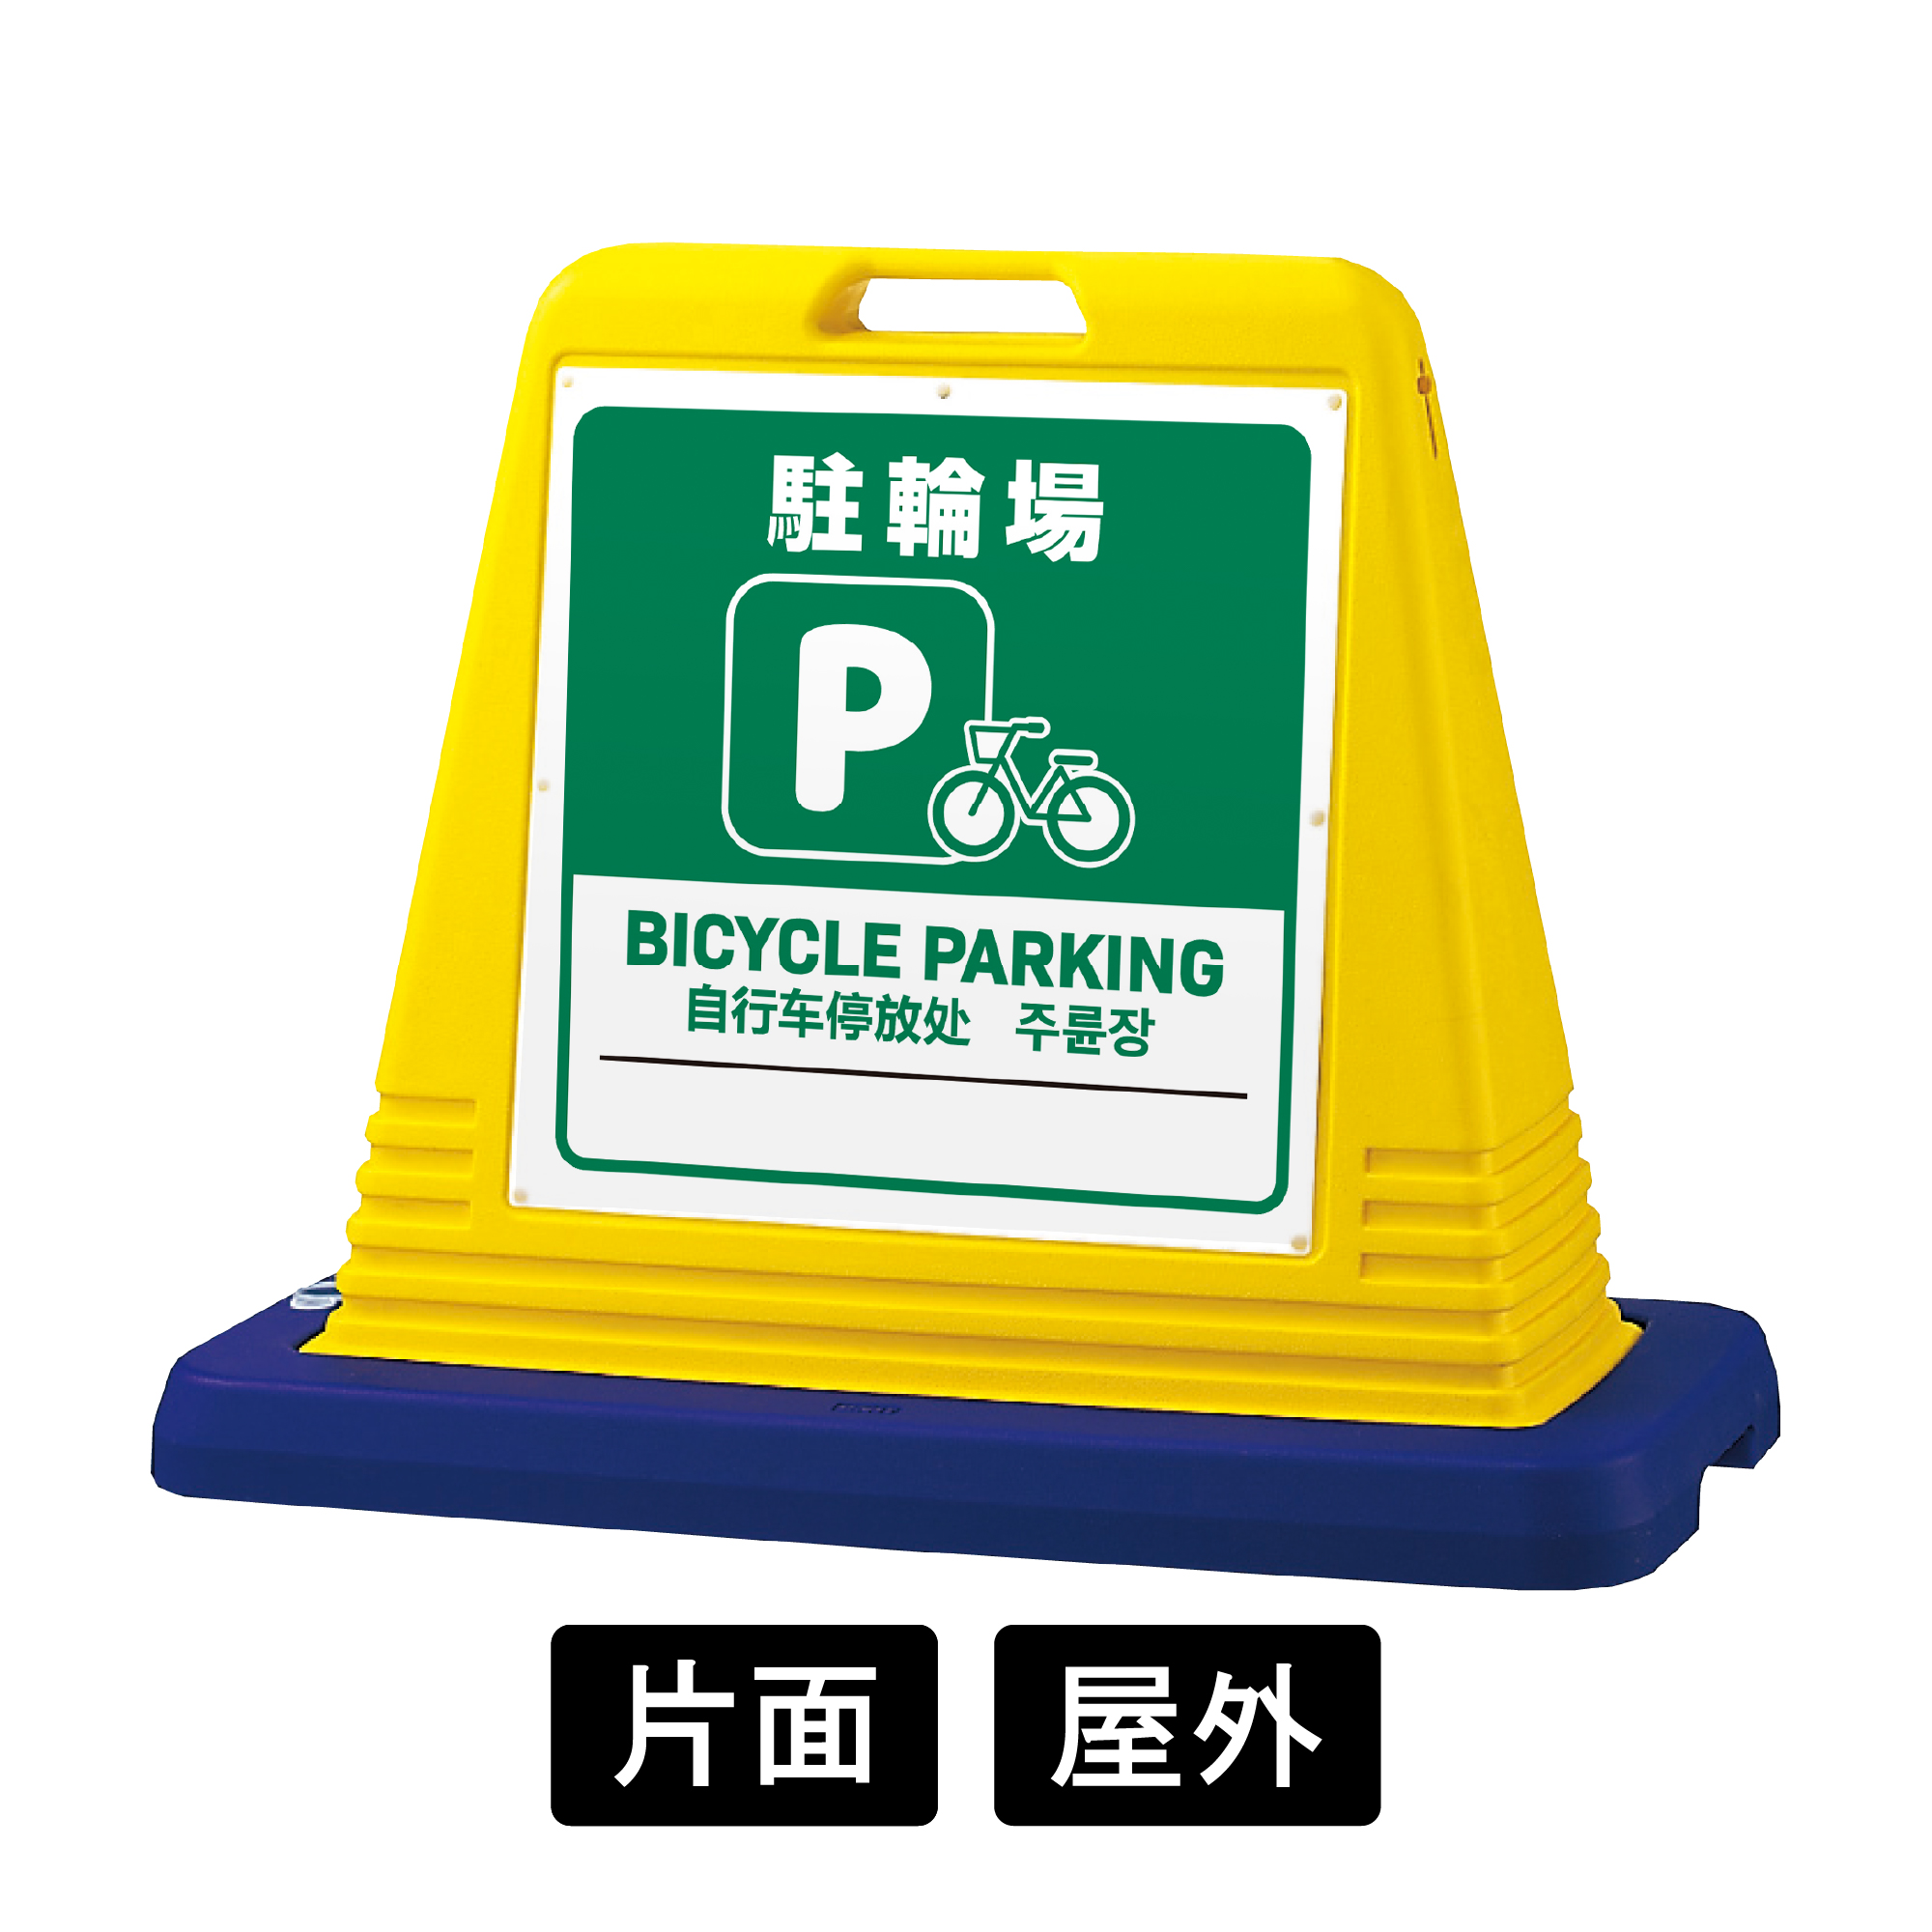 サインキューブ 「駐輪場」 片面表示 イエロー SignWebオリジナル 多言語 ユニバーサルデザイン